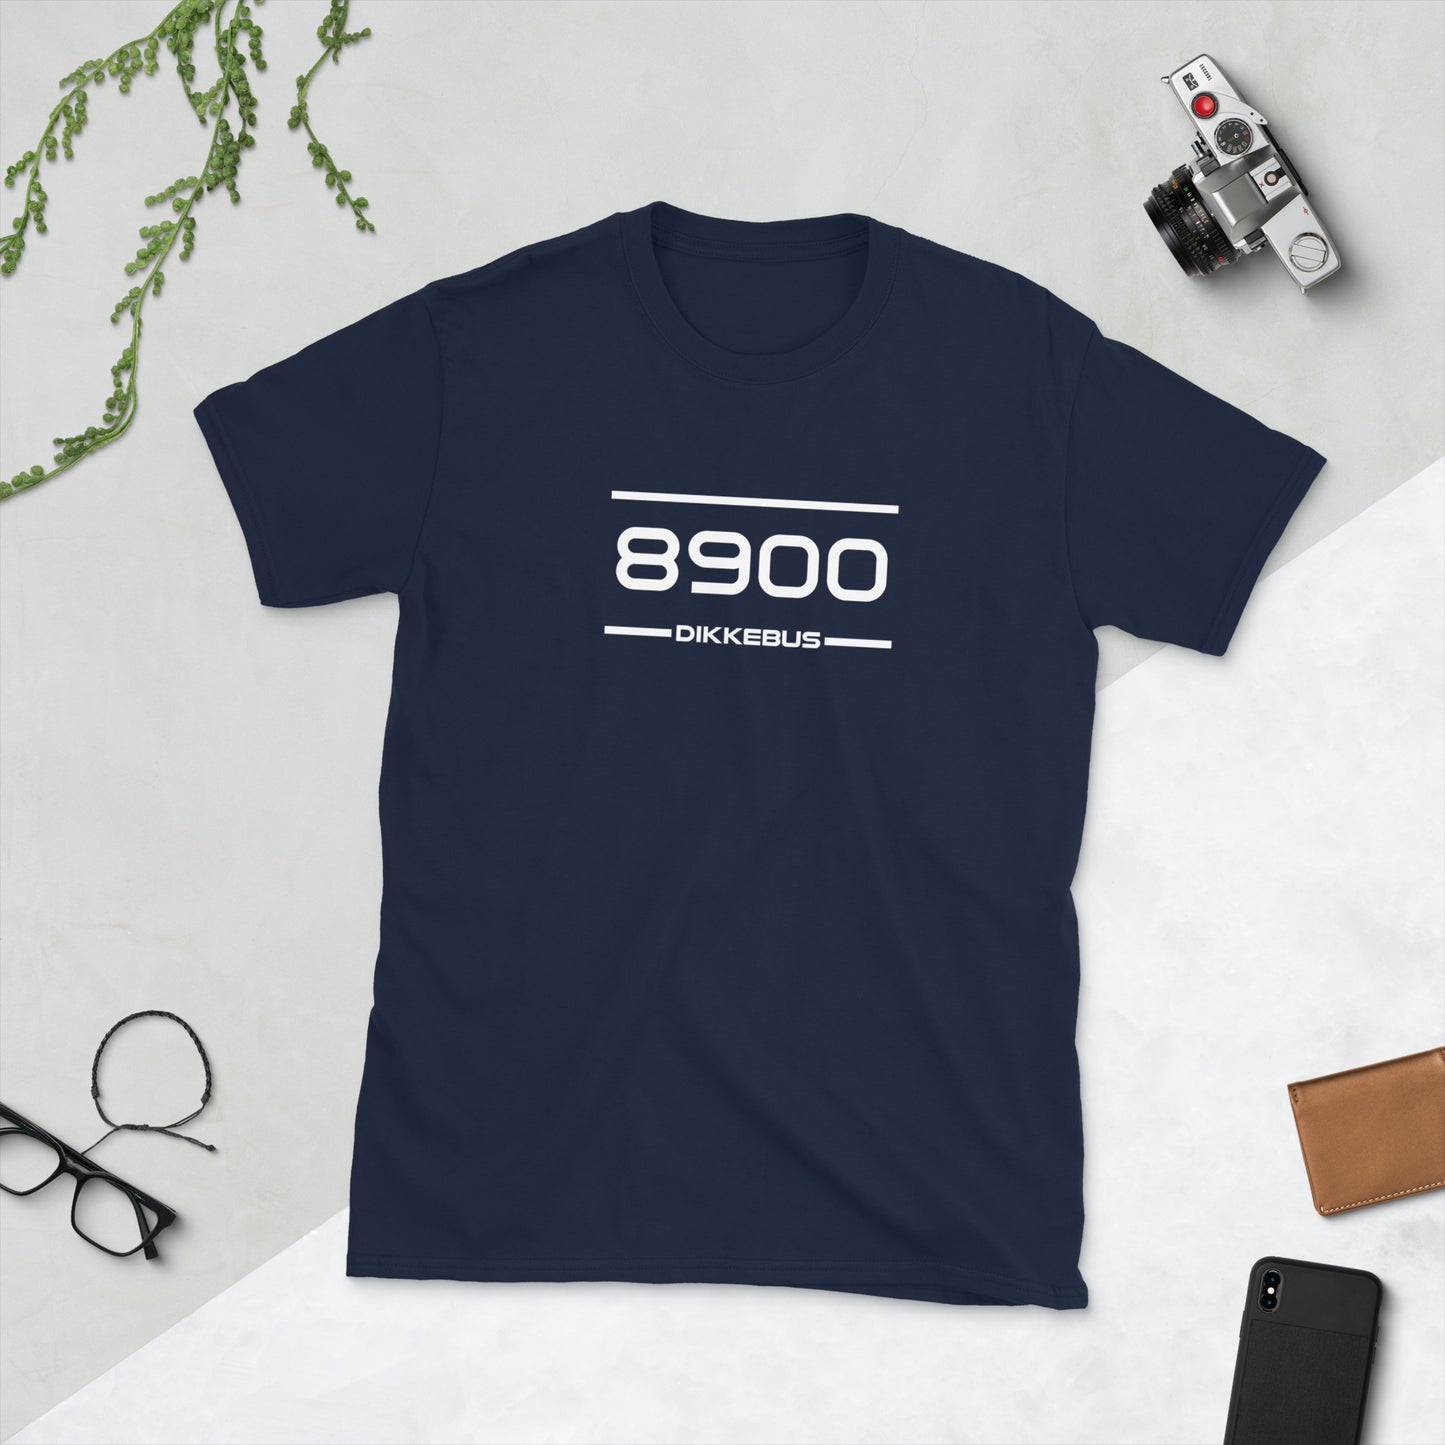 Tshirt - 8900 - Dikkebus